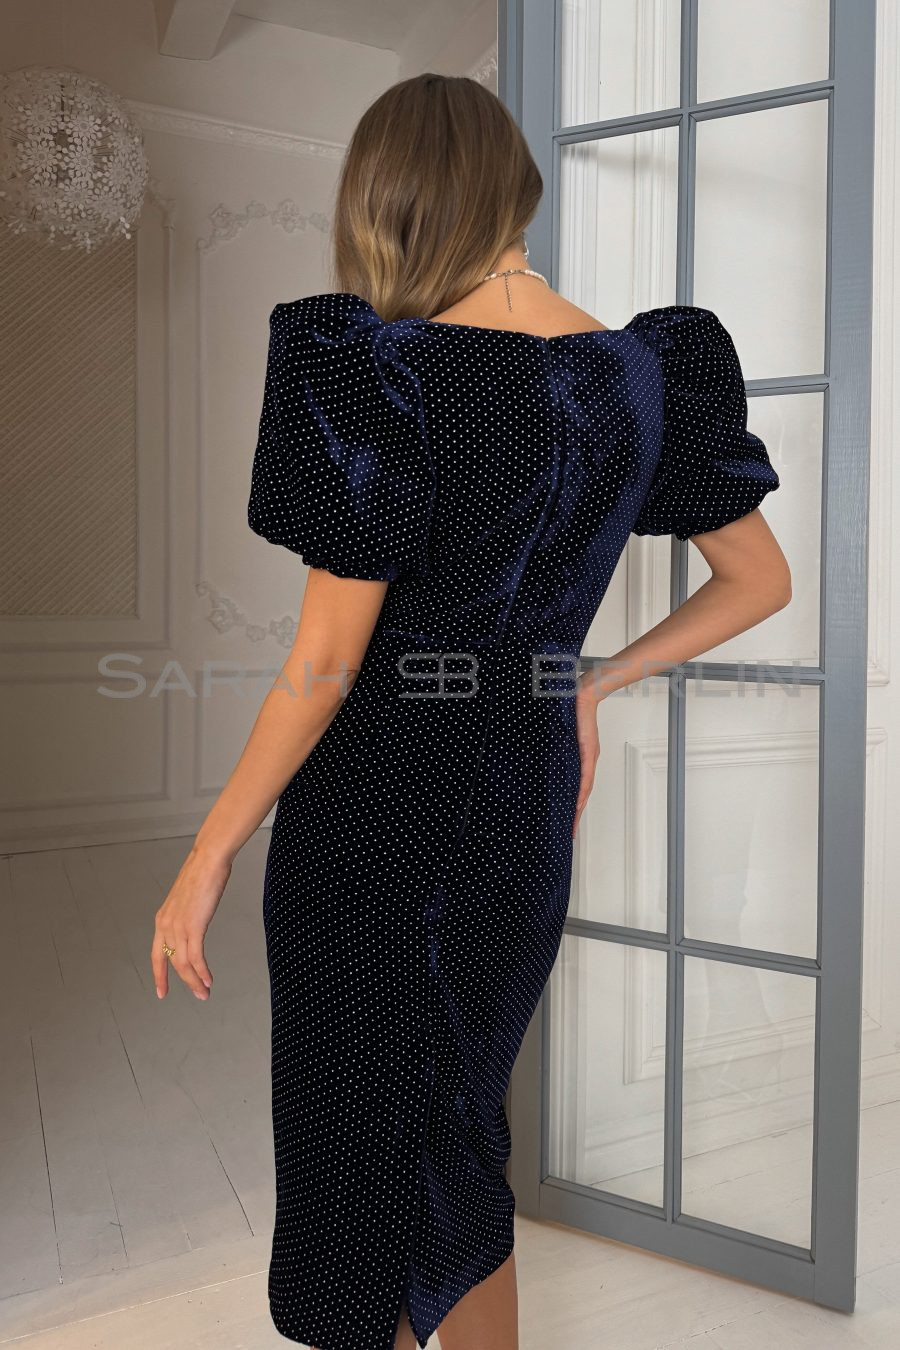 Платье в горошек с рукавами фонарик, из итальянского бархата на шелковой основе